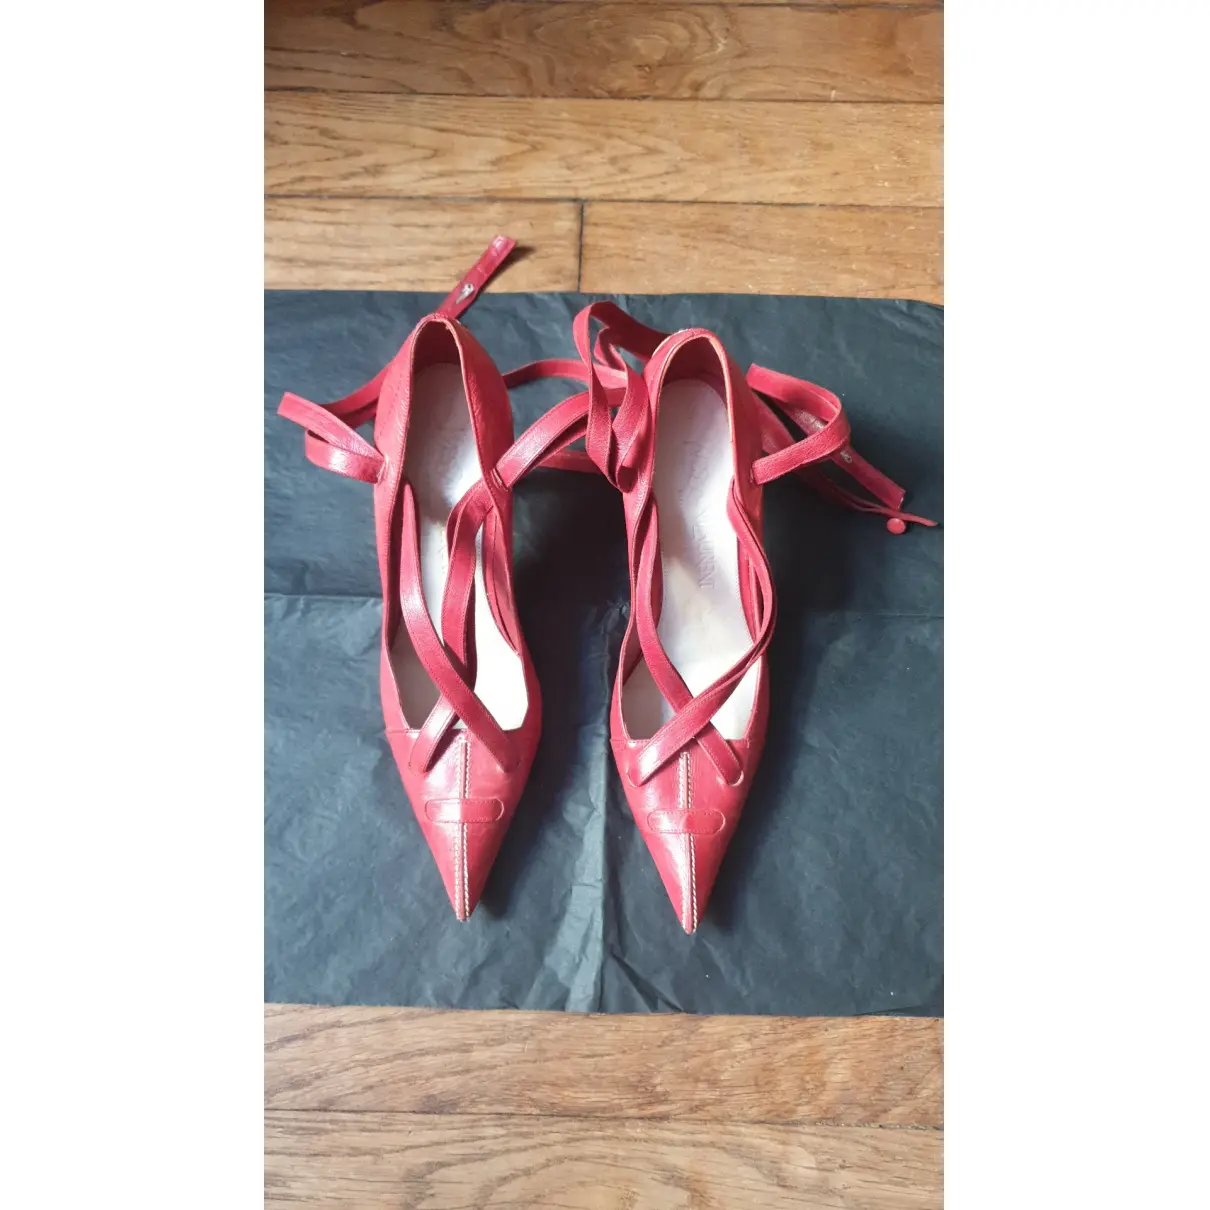 Buy Yves Saint Laurent Leather heels online - Vintage